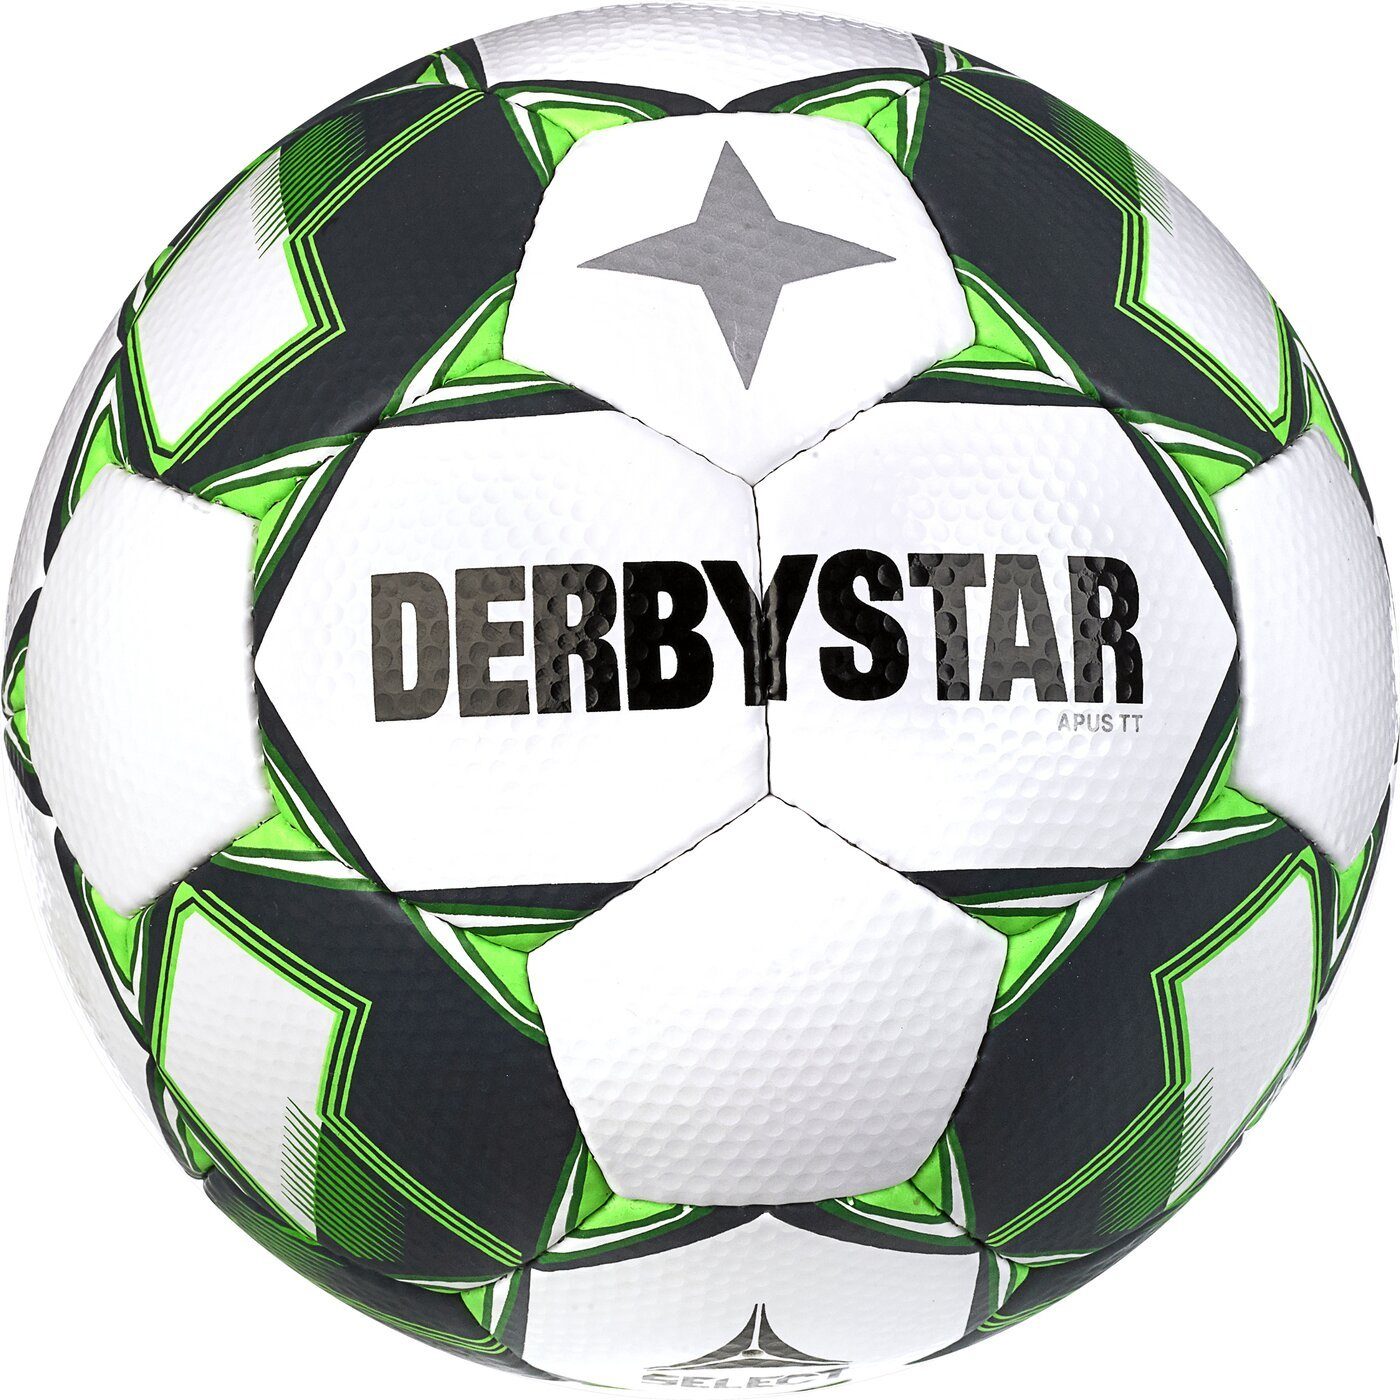 WEISS Derbystar Apus Fußball TT v23 GRÜN